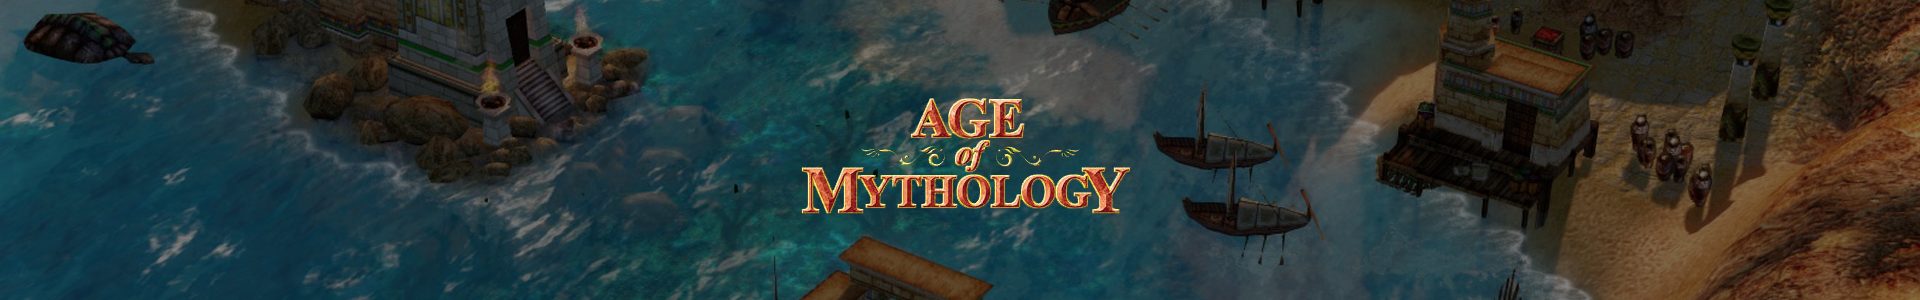 Age of Mythology Unit Statistics, PDF, European Mythology